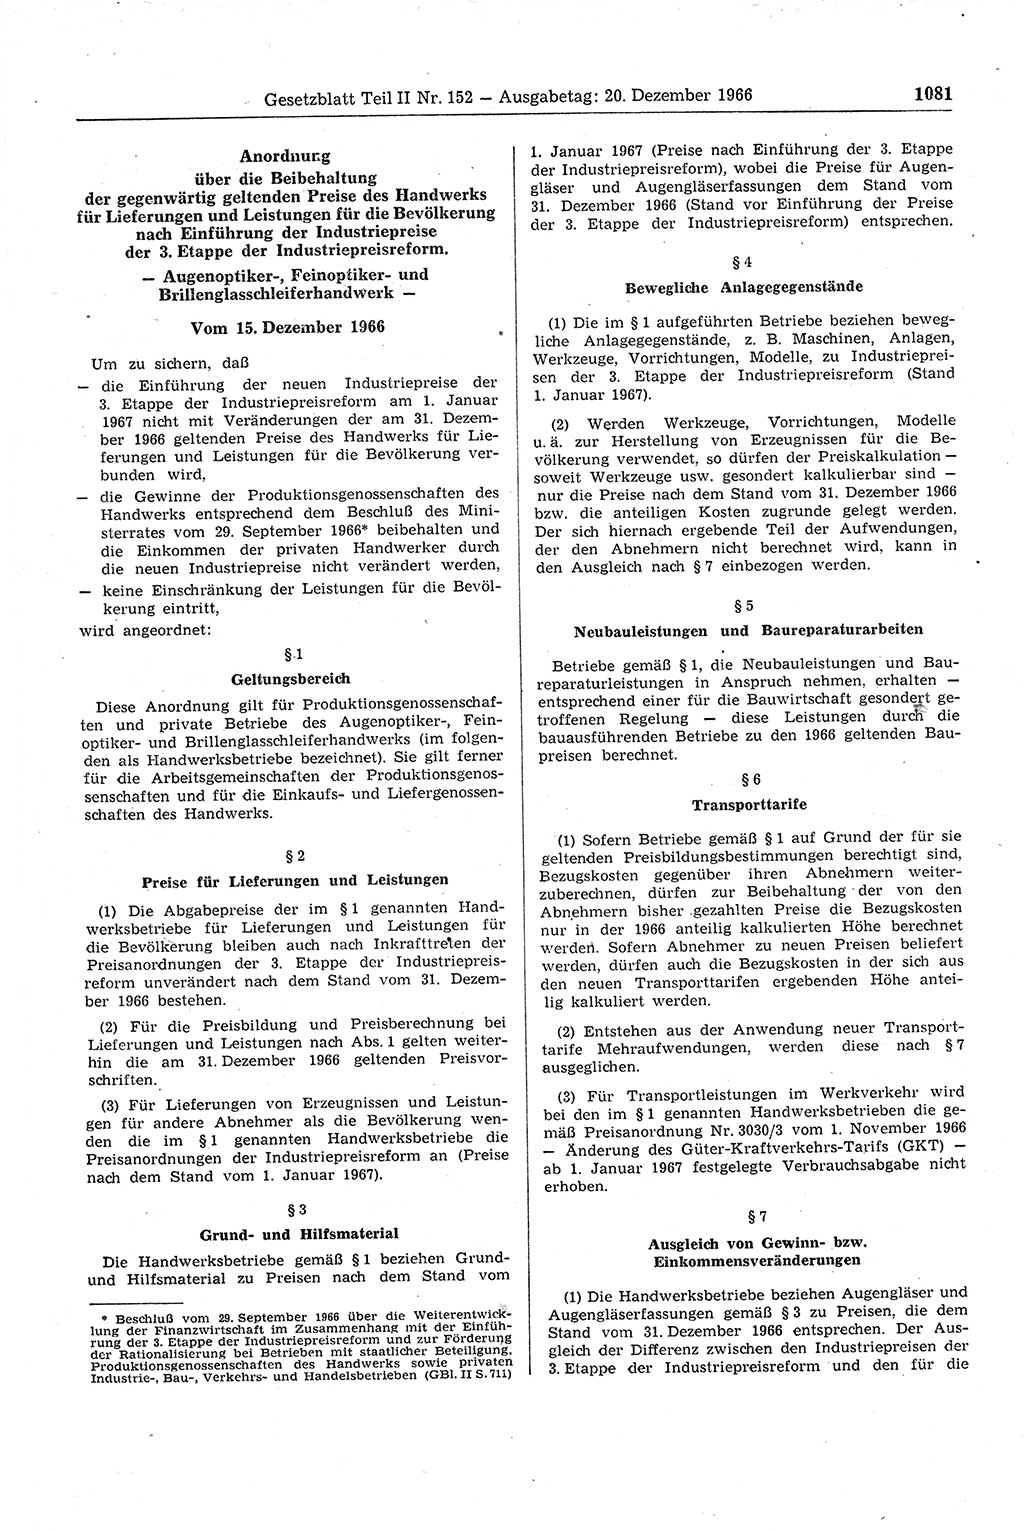 Gesetzblatt (GBl.) der Deutschen Demokratischen Republik (DDR) Teil ⅠⅠ 1966, Seite 1081 (GBl. DDR ⅠⅠ 1966, S. 1081)